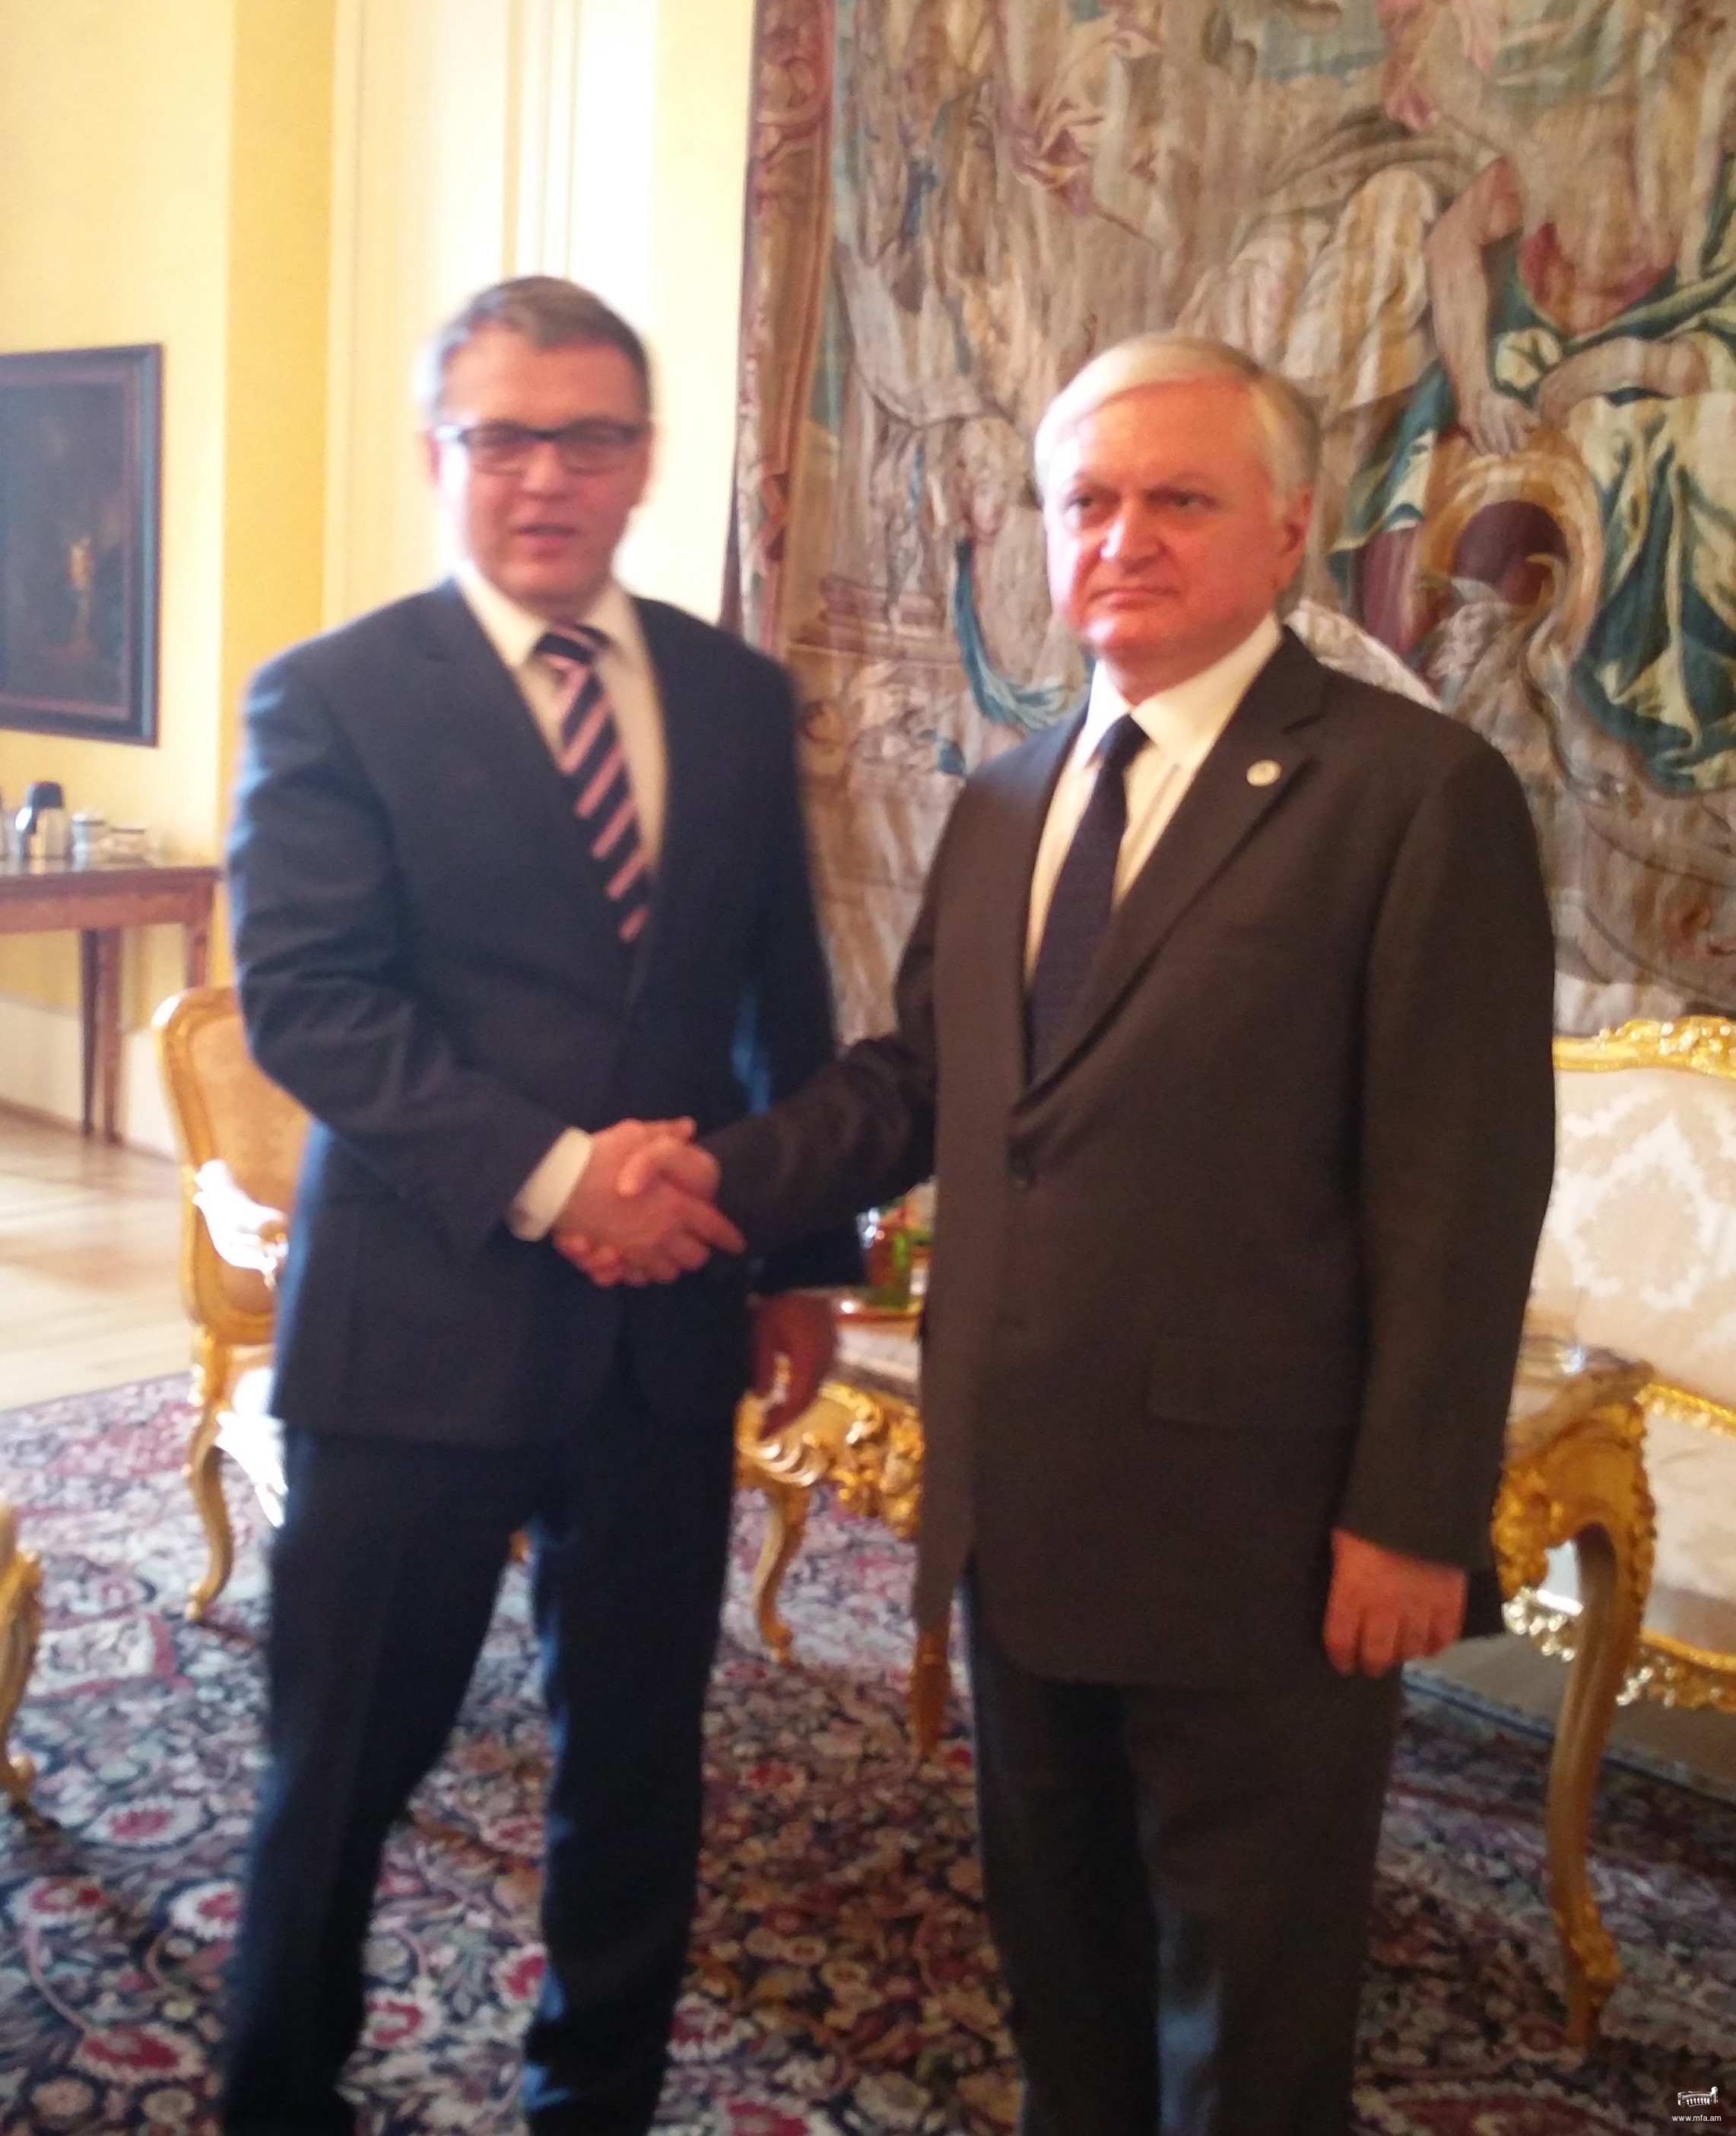 Встреча министров иностранных дел Армении и Чехии